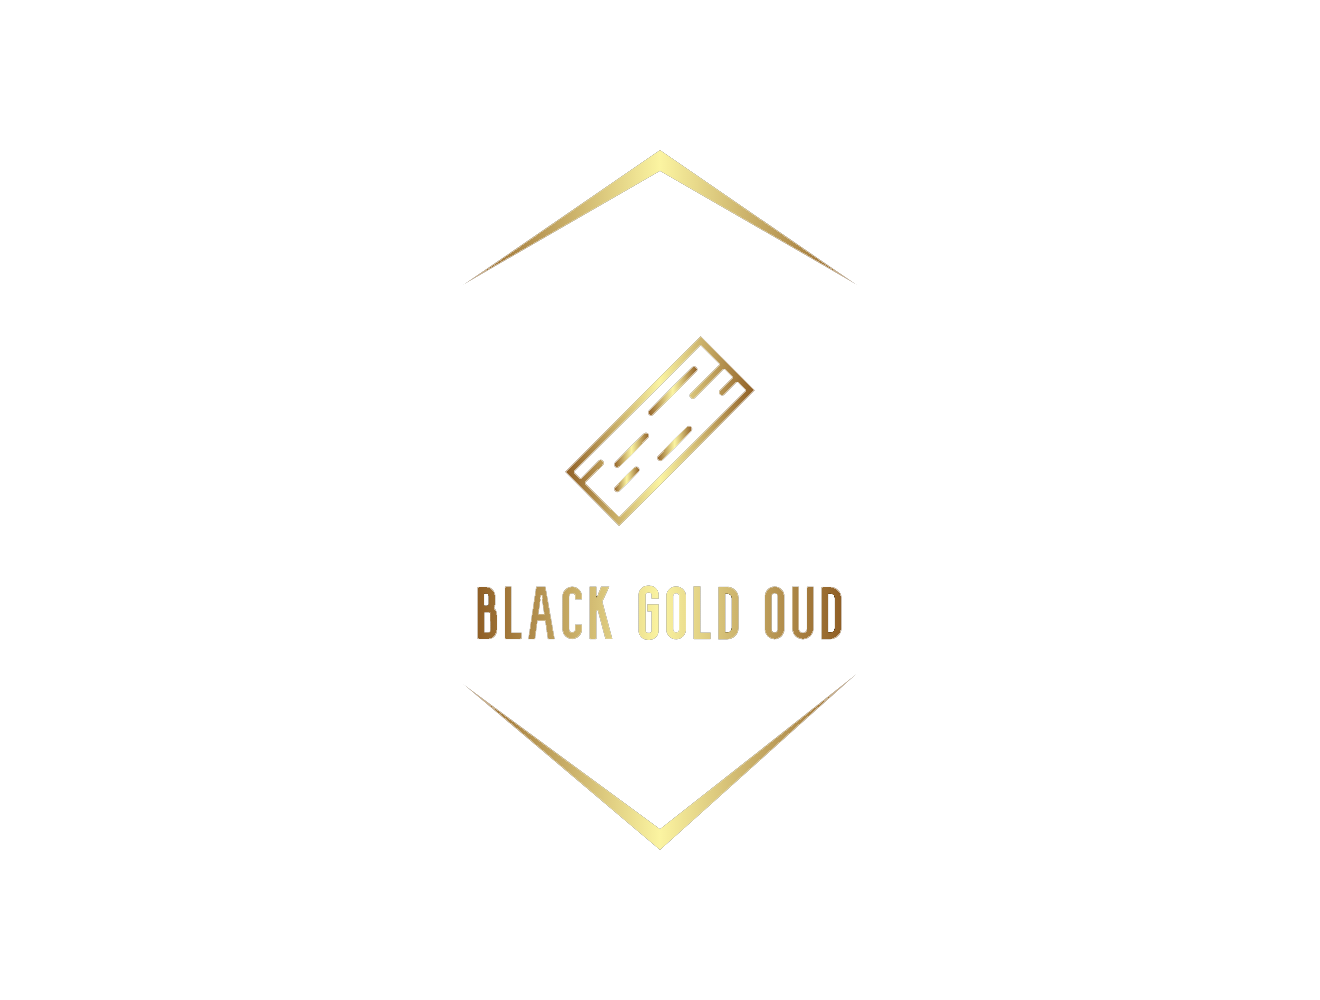 Black gold oud  الذهب الأسود للعود 